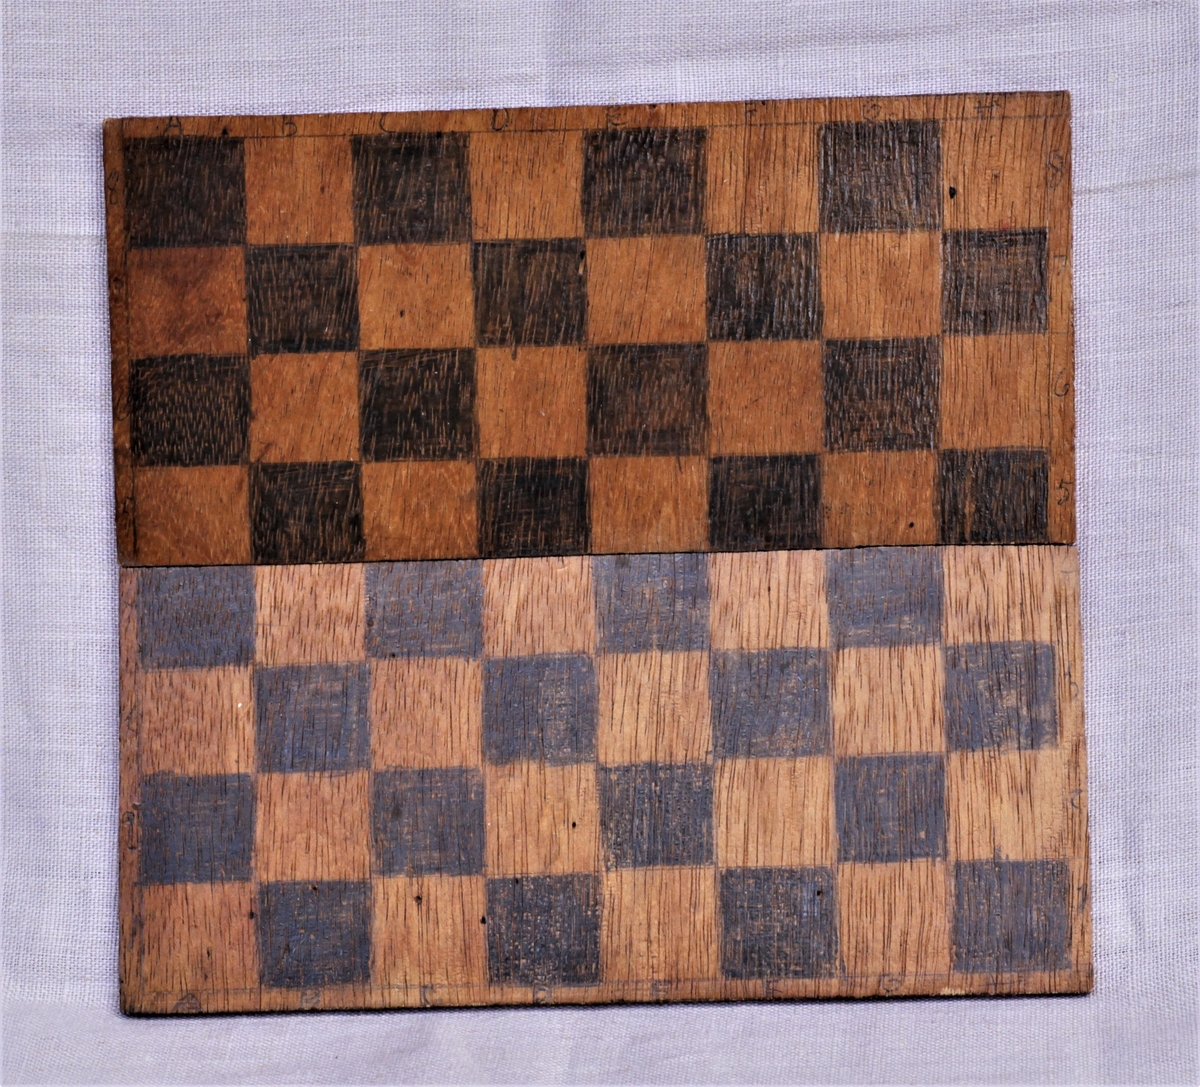 Hjemmelaget sjakkbrett. Utskjært treplate i to deler, festet med tape på baksiden. Dette er gjort slik at den kan legges sammen. Tegnede felter, tall og bokstaver.